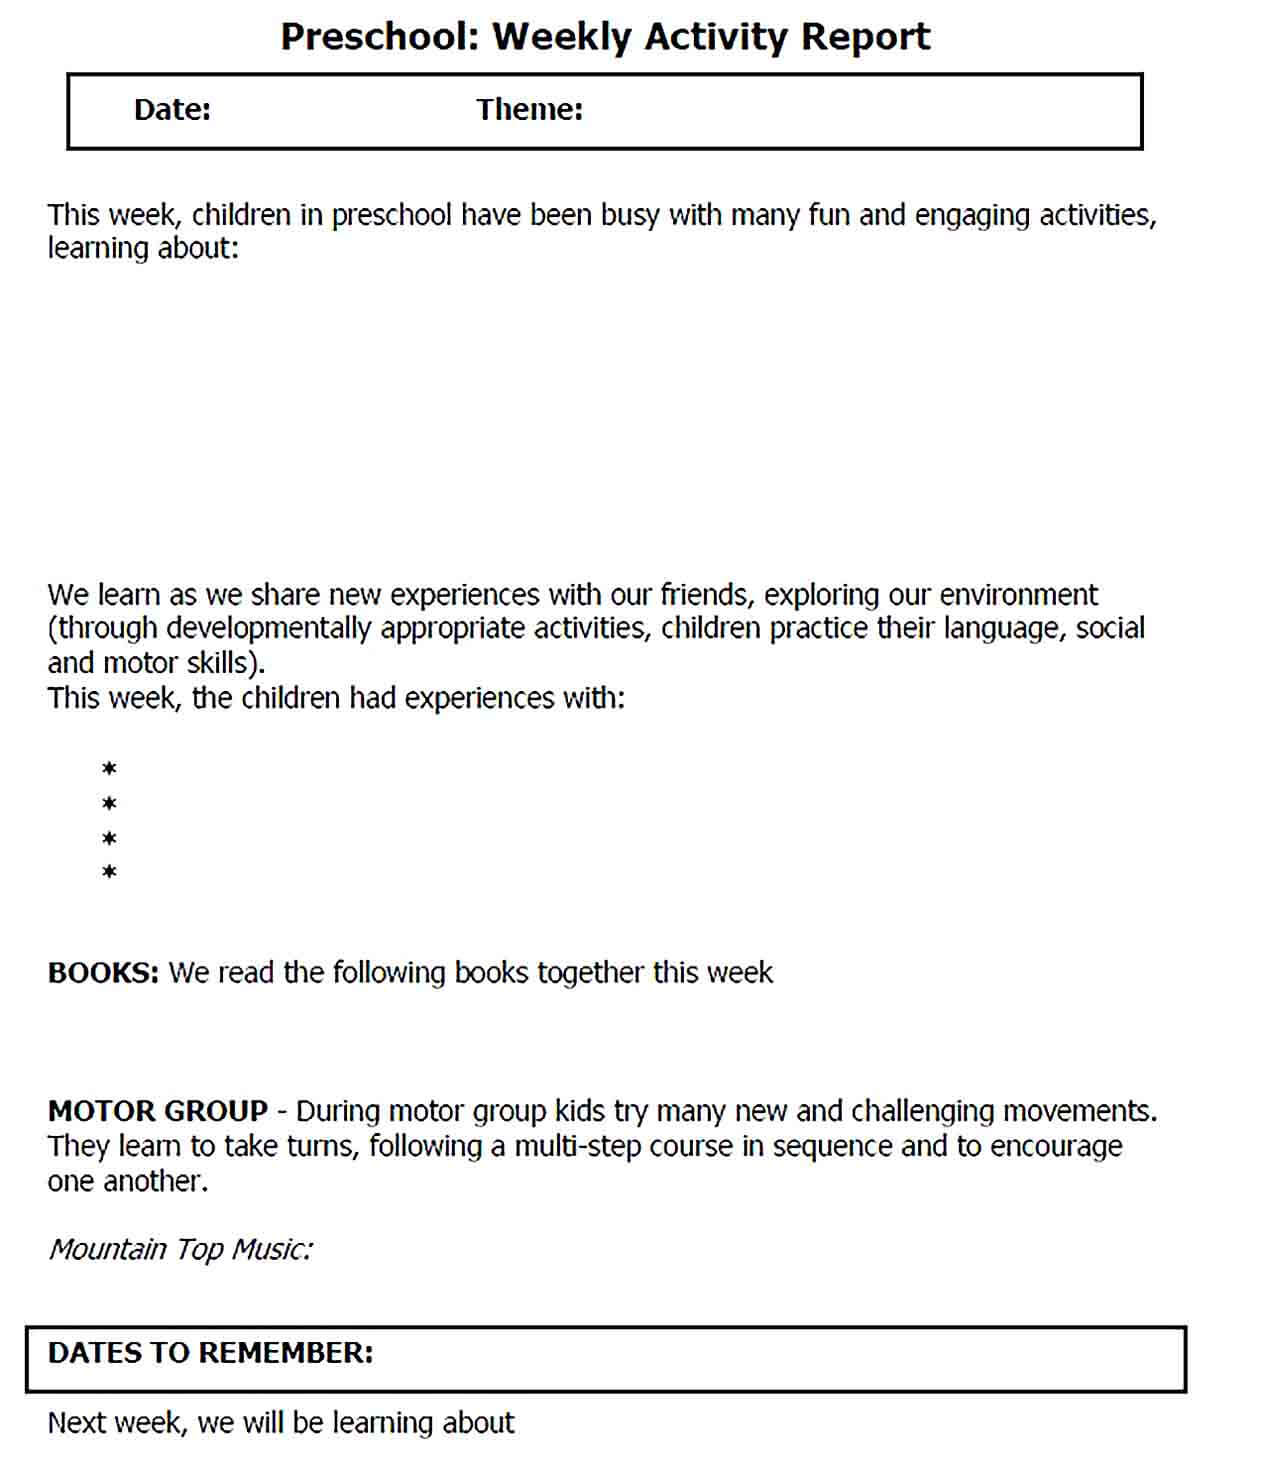 Sample Preschool Weekly Activity Report